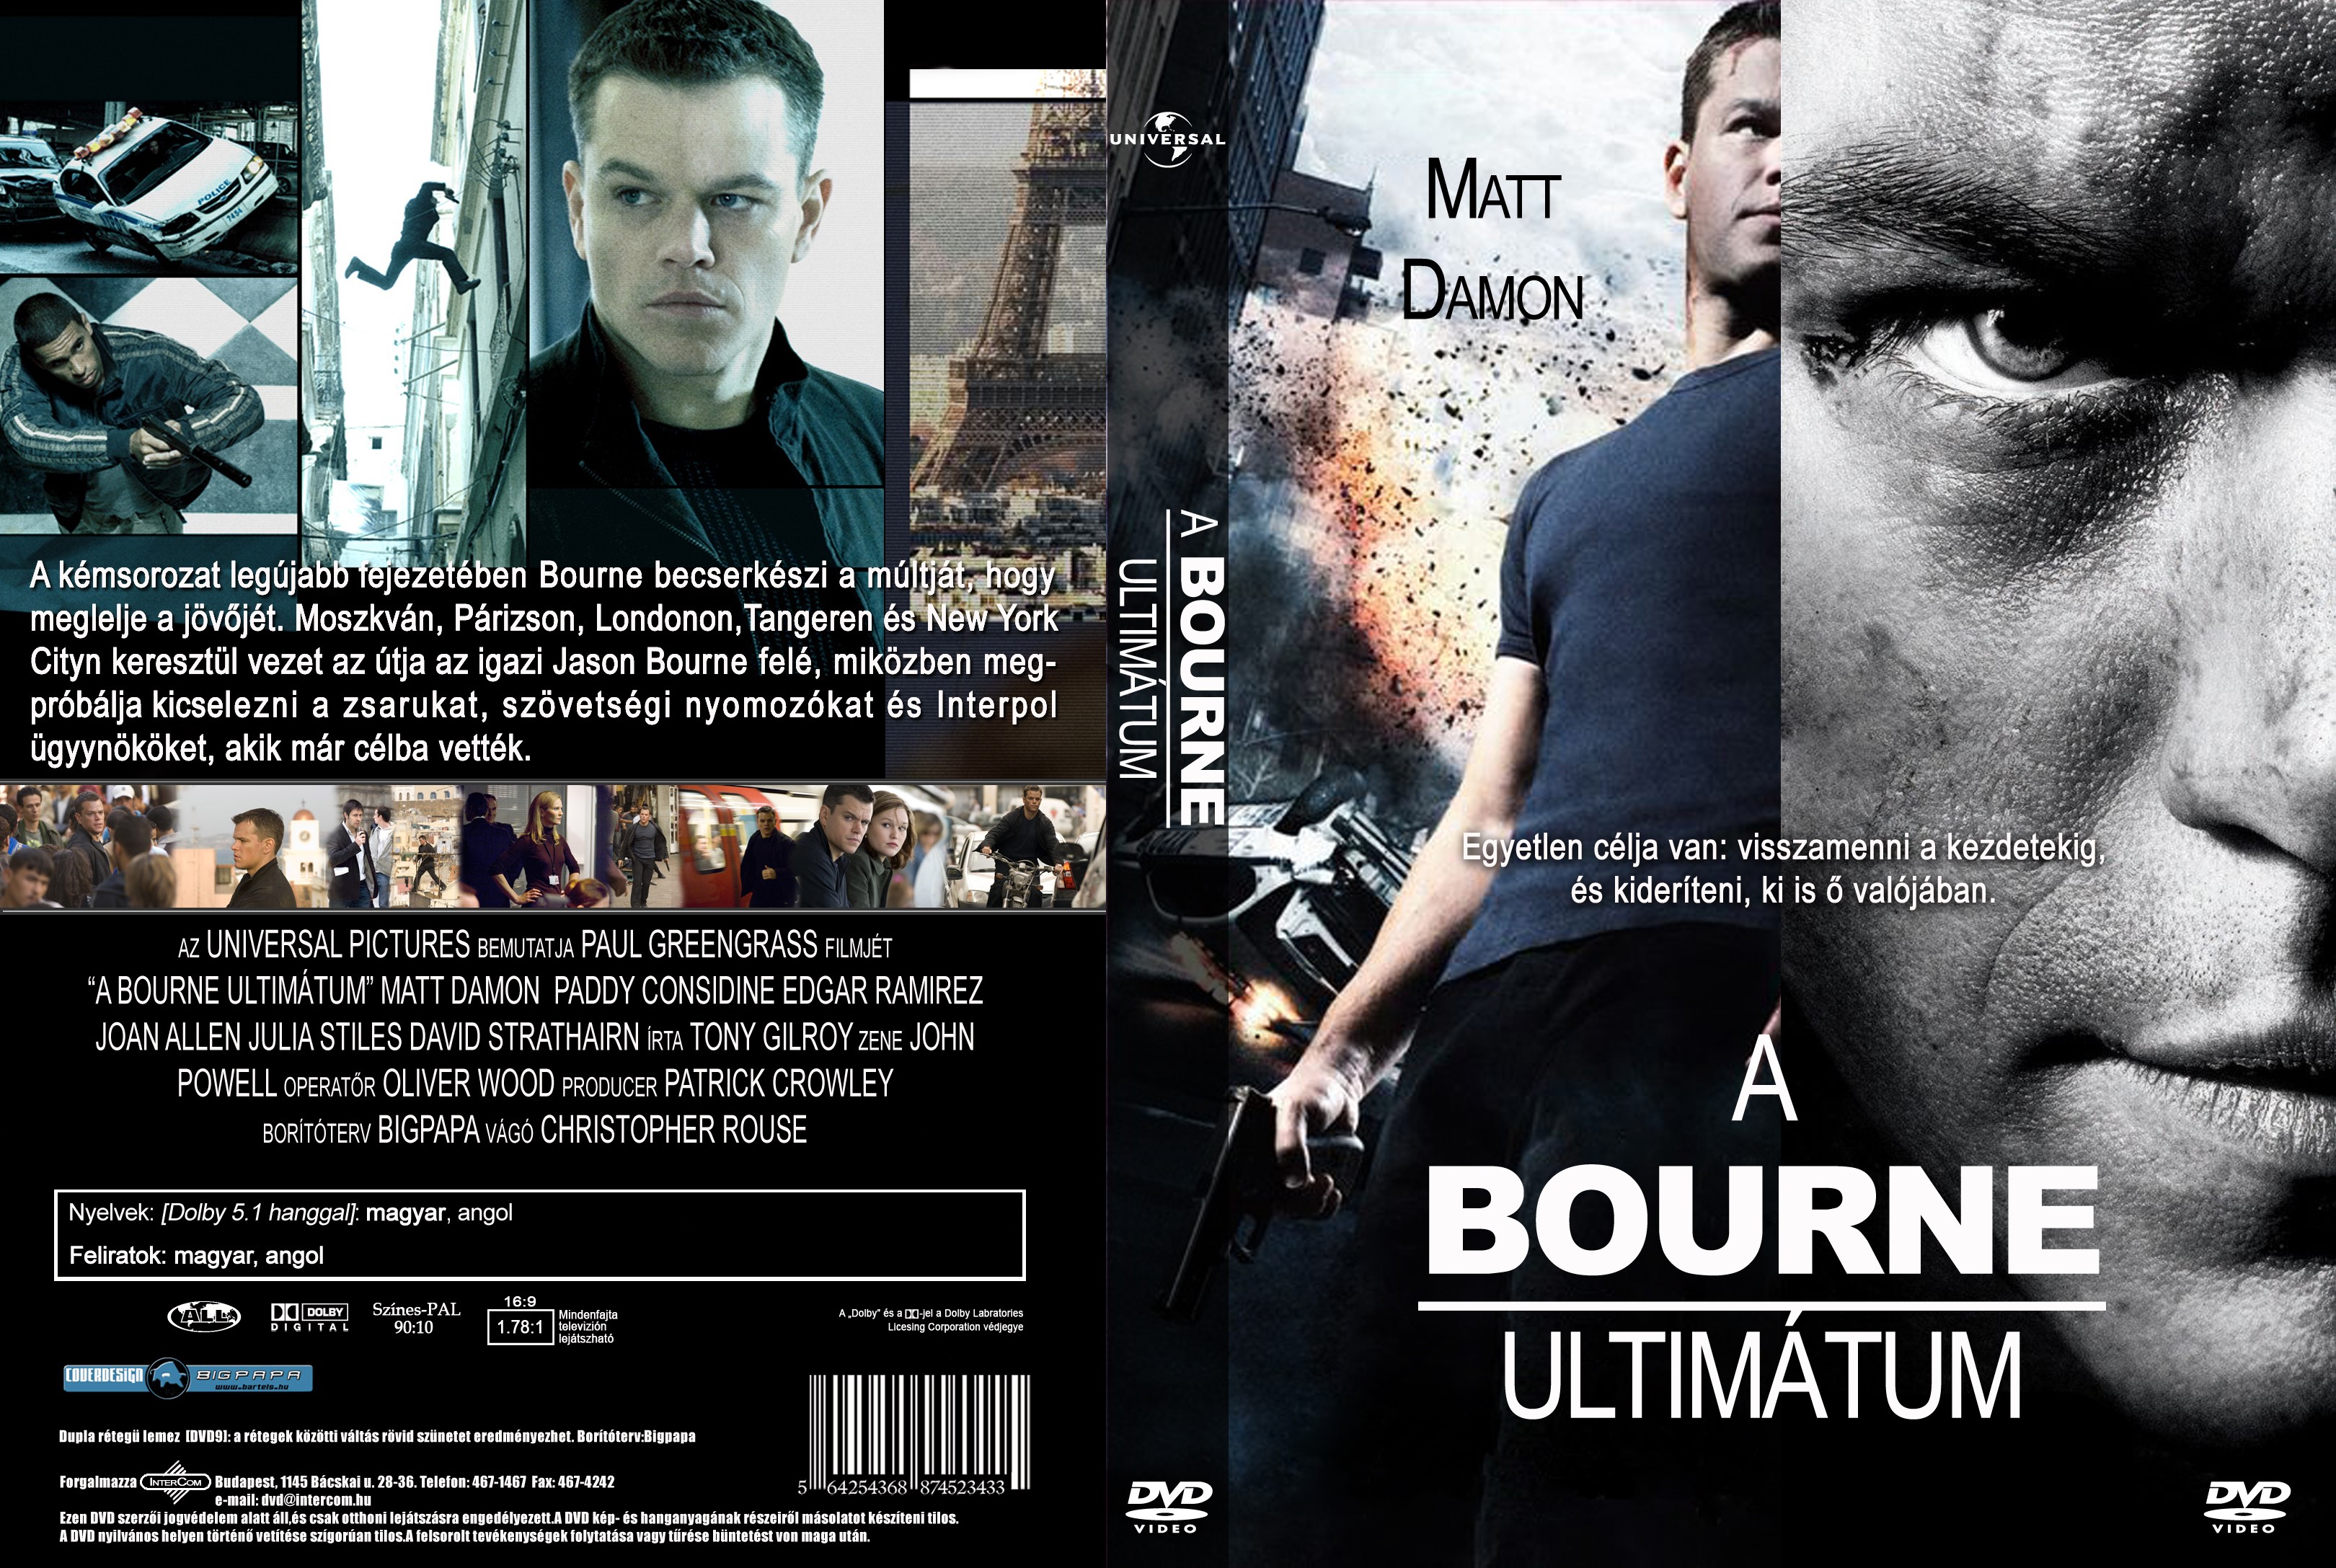 A Bourne ultimtum